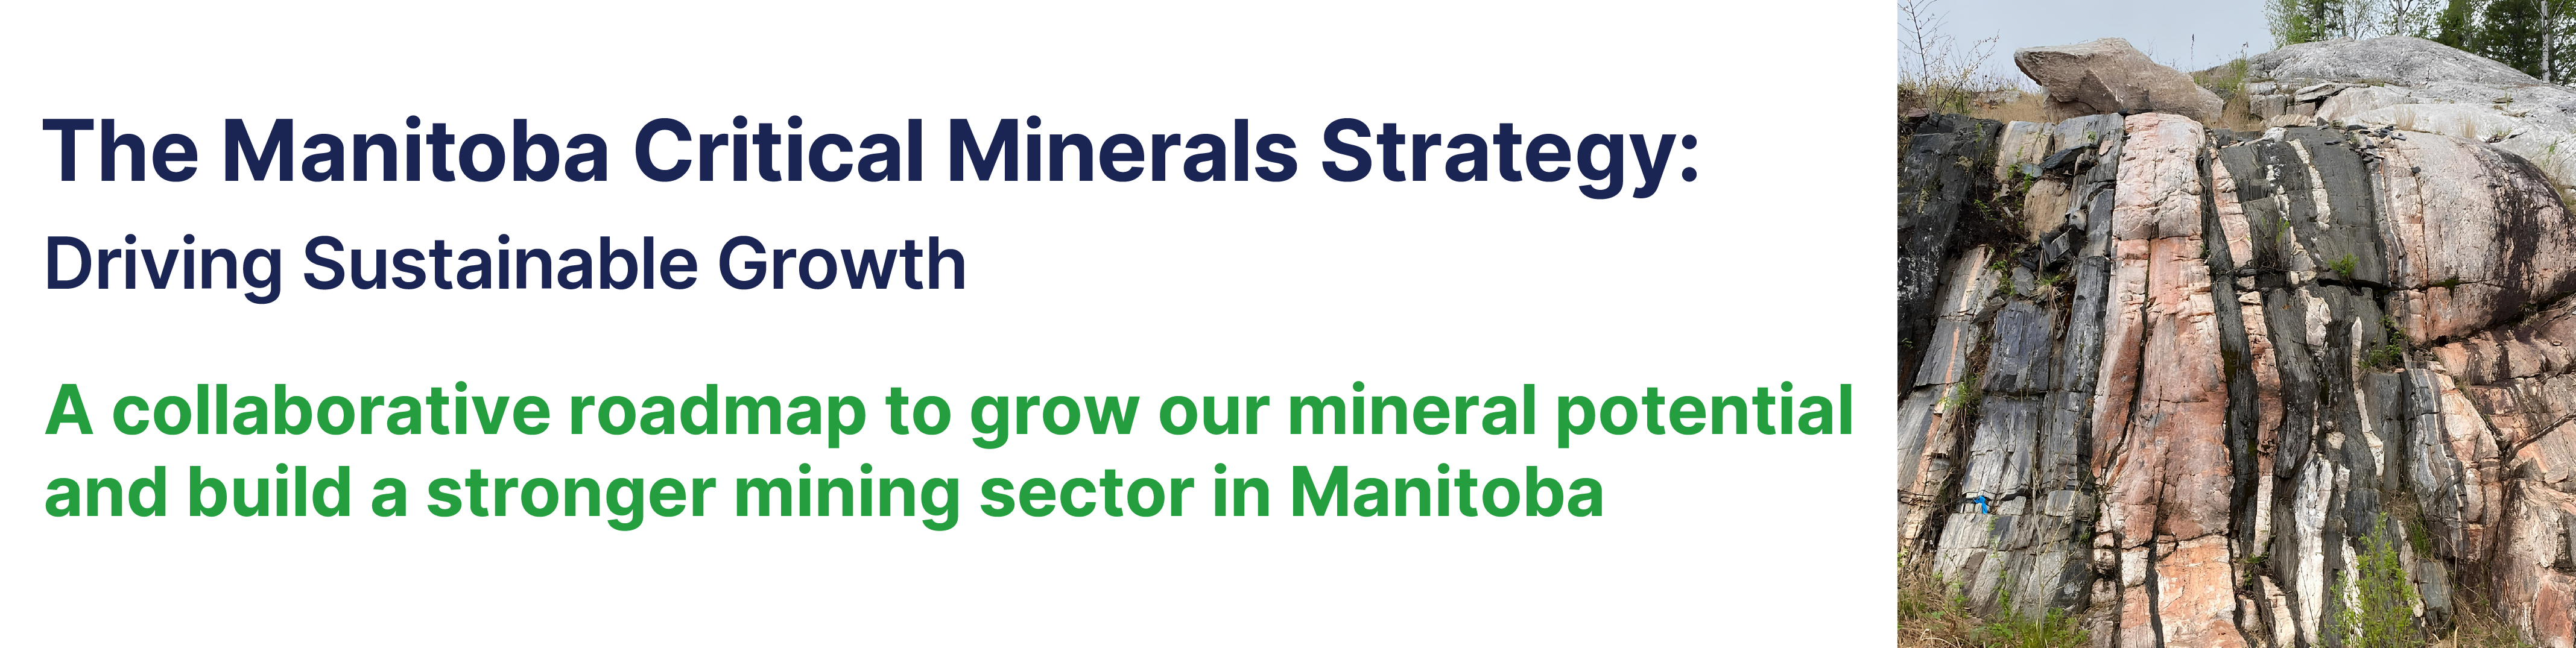 Manitoba Critical Minerals Strategy